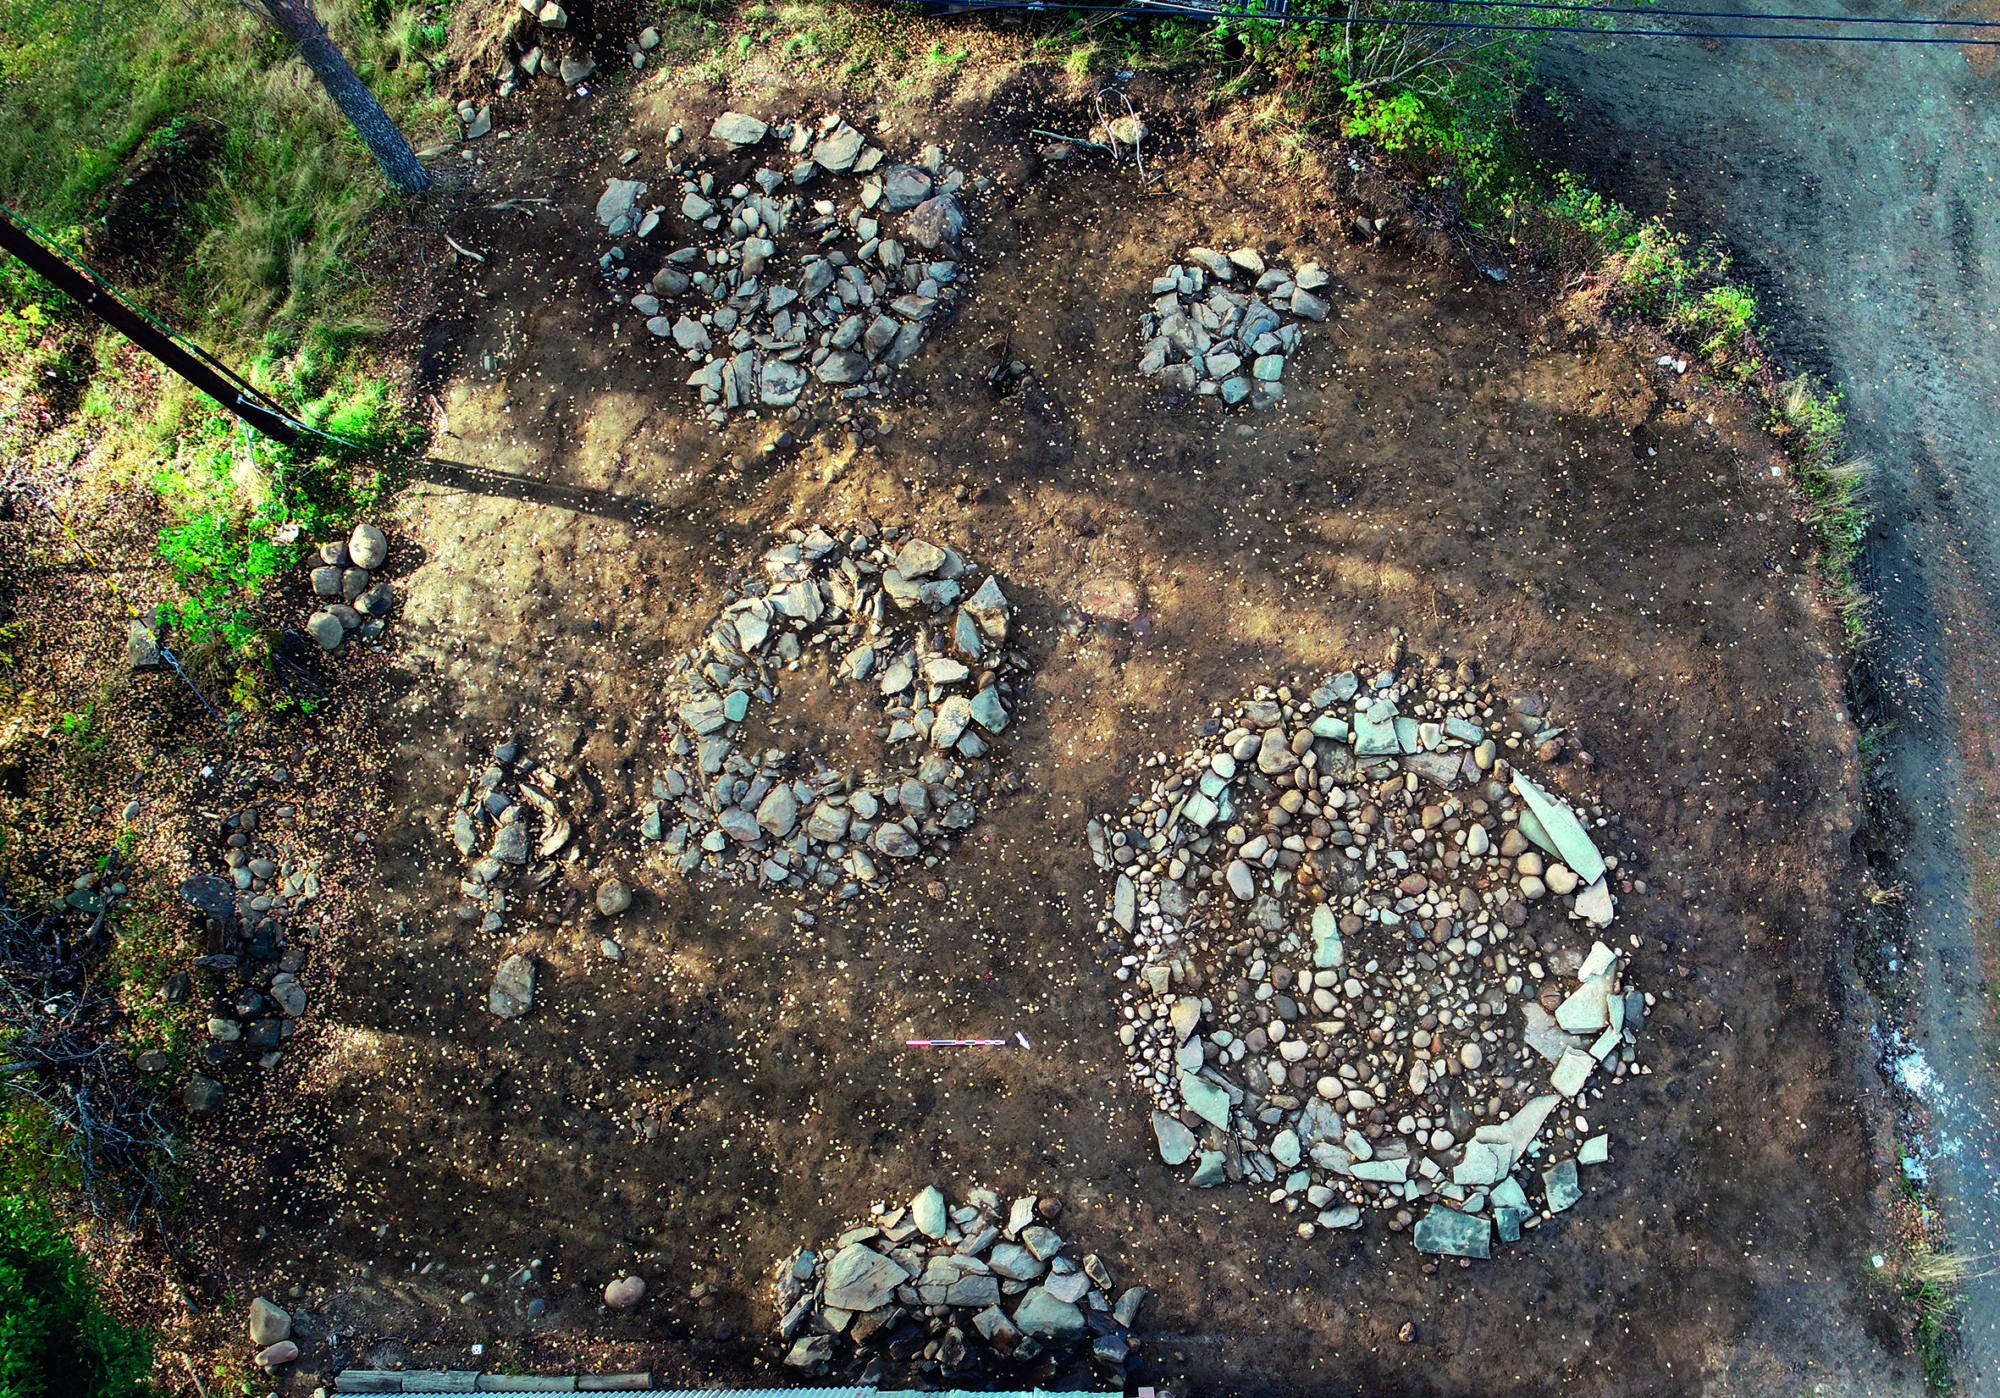 Gravformene i førromersk jernalder og eldre romertid likner hverandre, og har form av enkle steinsirkler og steinlegninger. Grønnsteinssirkelen lengst til høyre i bildet. Foto: Roger Skjelbakken, NTNU Vitenskapsmuseet. 